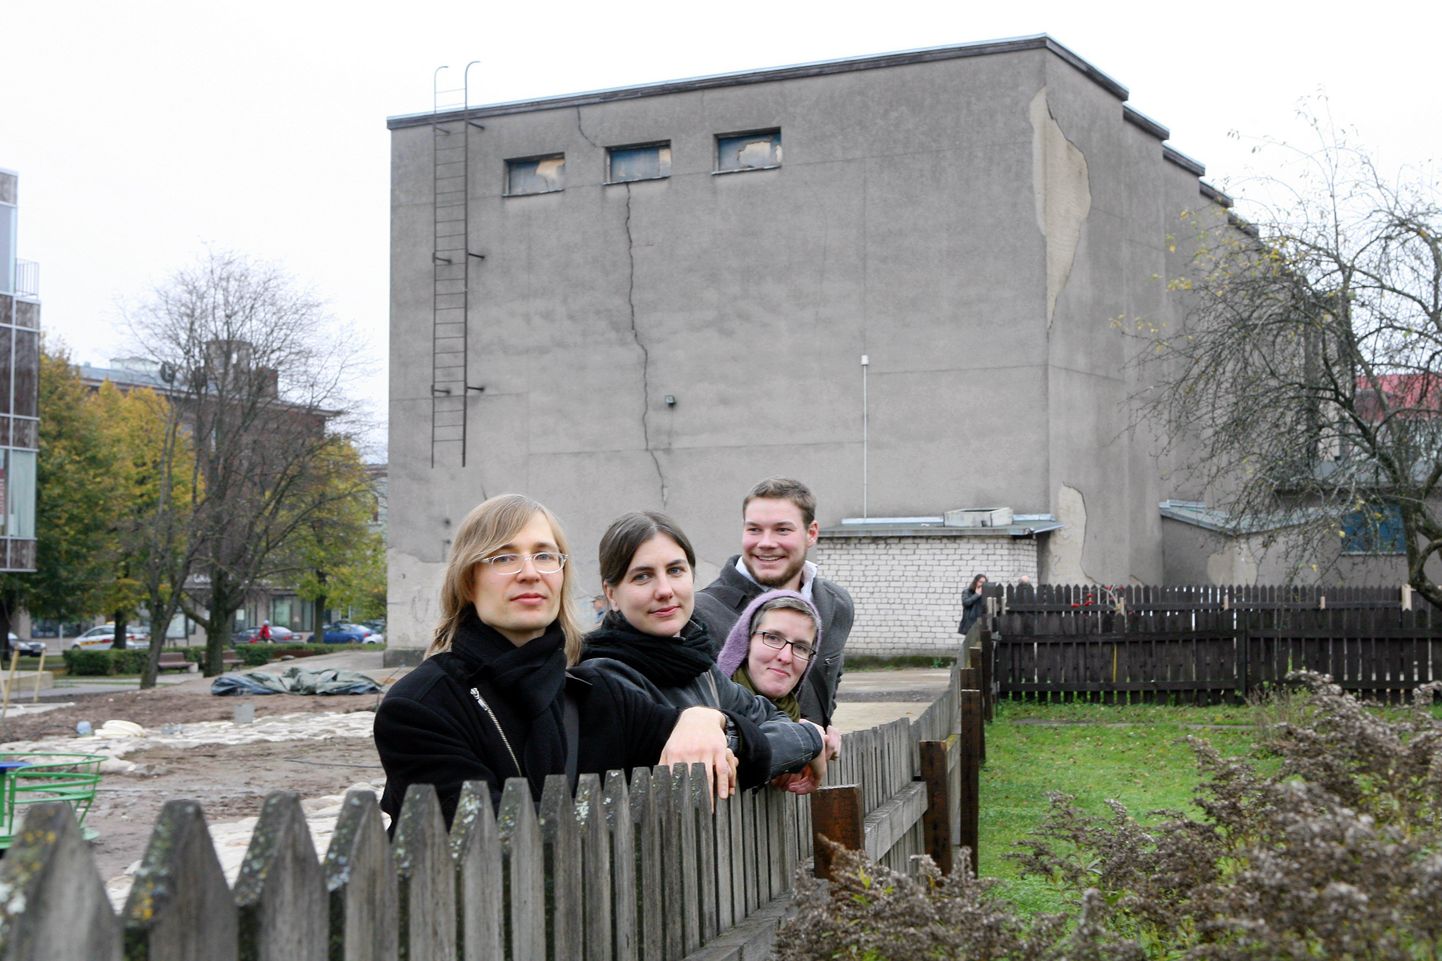 Viljandi kultuuriakadeemia arhitektuurivõistluse võidutöö «Põlendiku» tegid neli arhitekti, kes asuvad nüüd hoone ehitusprojekti looma.
Pildil arhitektid Indrek Peil, Siiri Valner, Heidi Urb ja Sten-Mark Mändmaa.